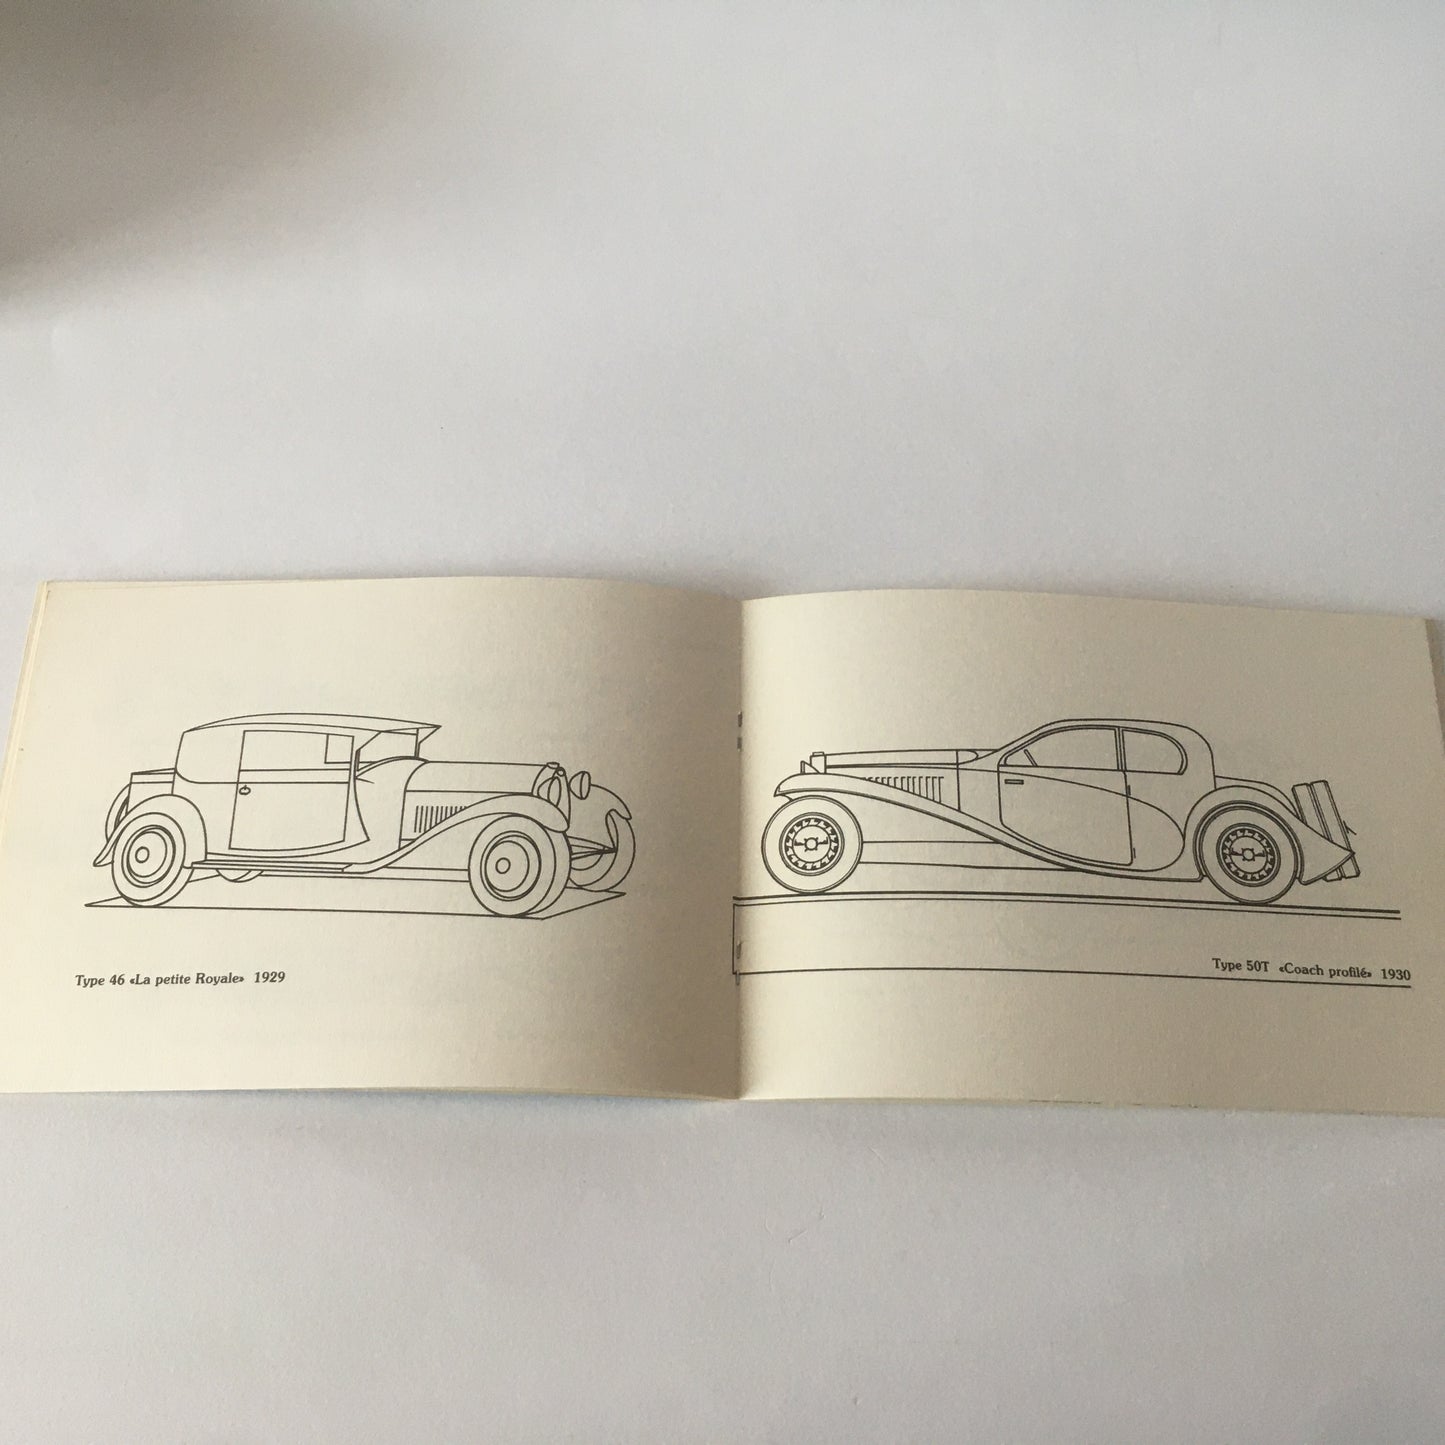 Bugatti, Album da Colorare Bugatti di Paul Kestler